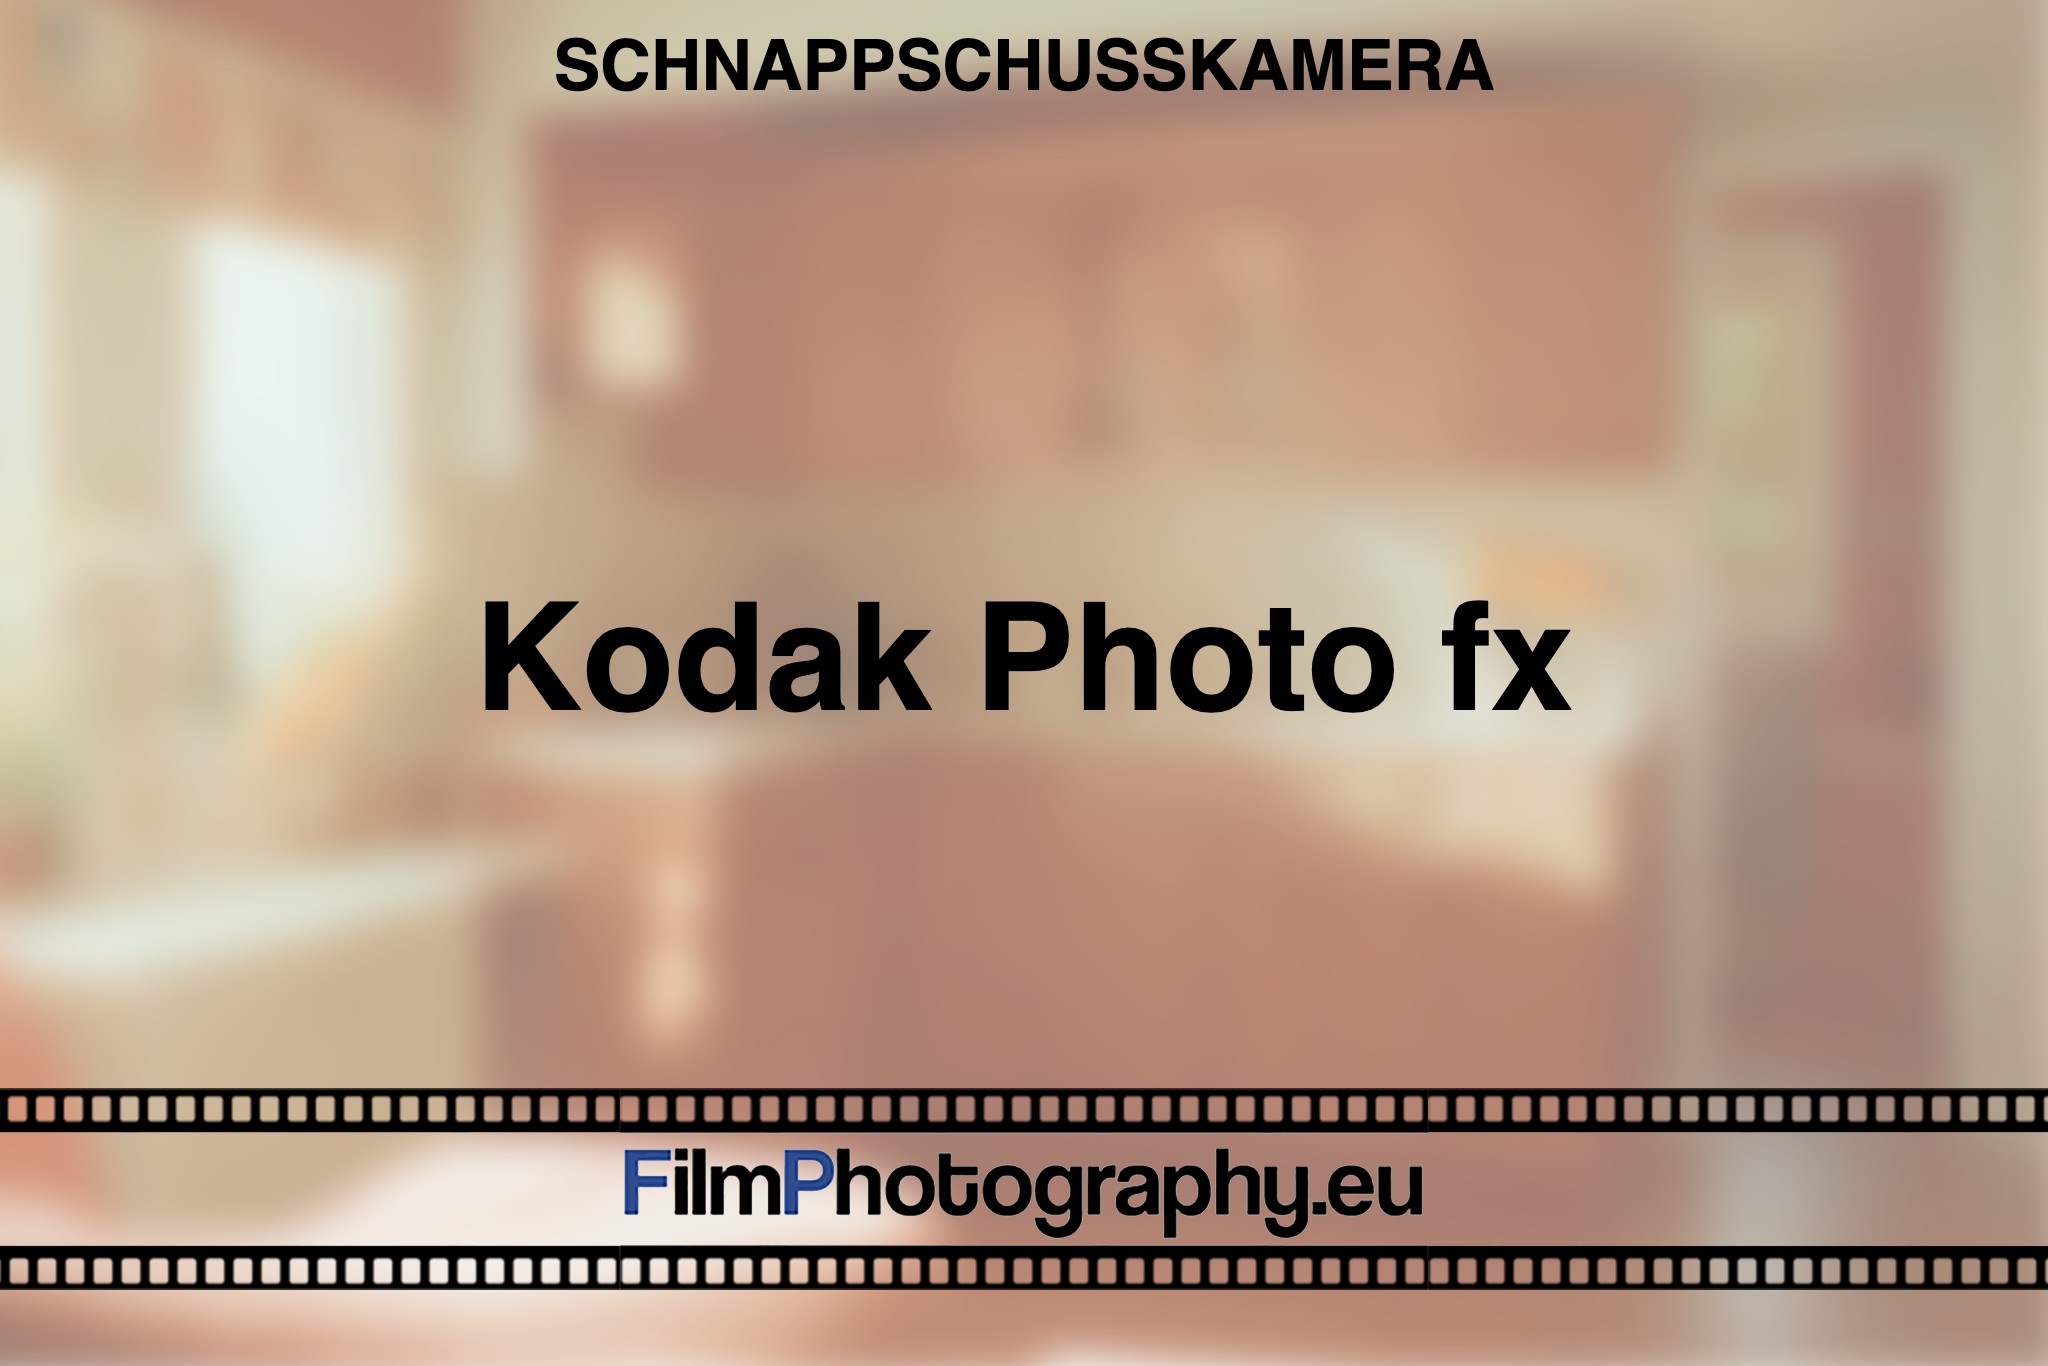 kodak-photo-fx-schnappschusskamera-bnv